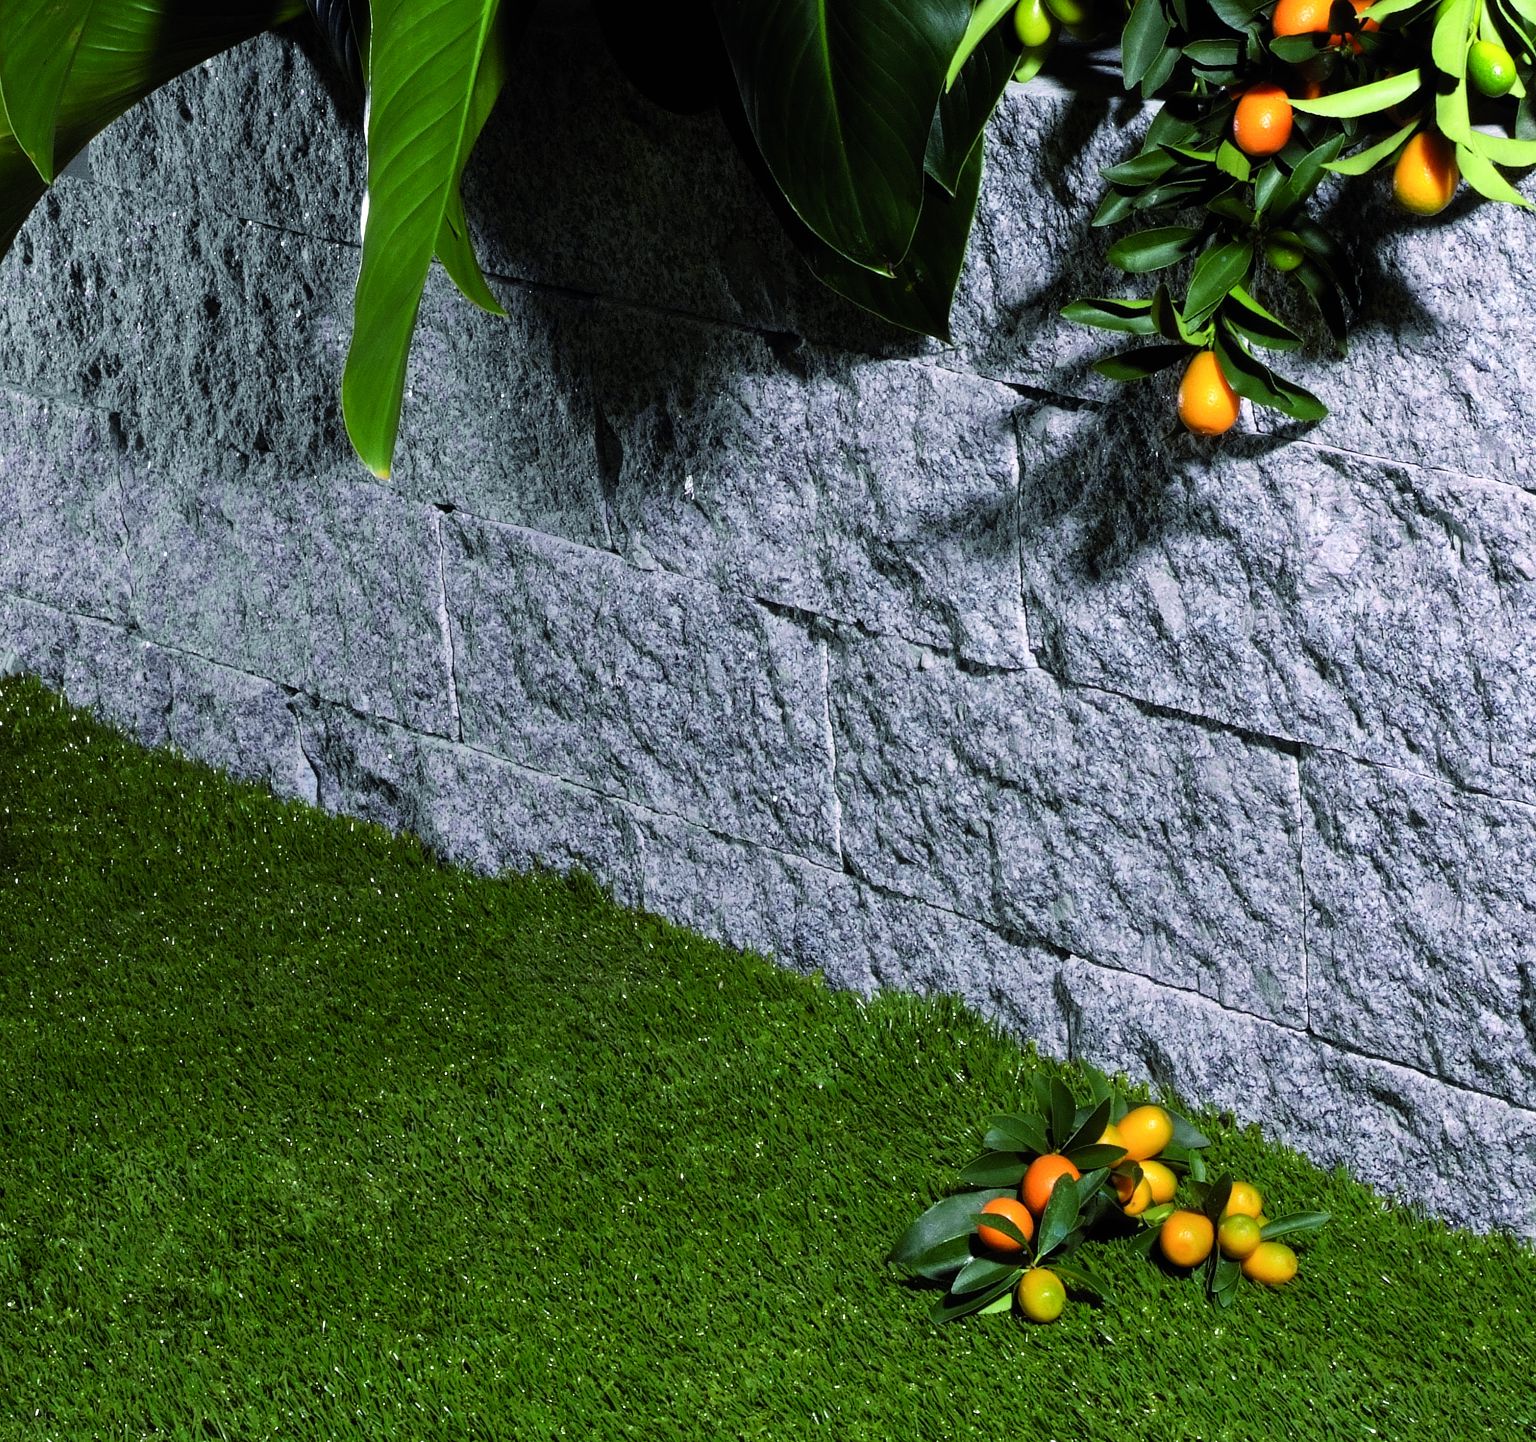 Ett utsnitt av en mur byggd av granitmurblock.